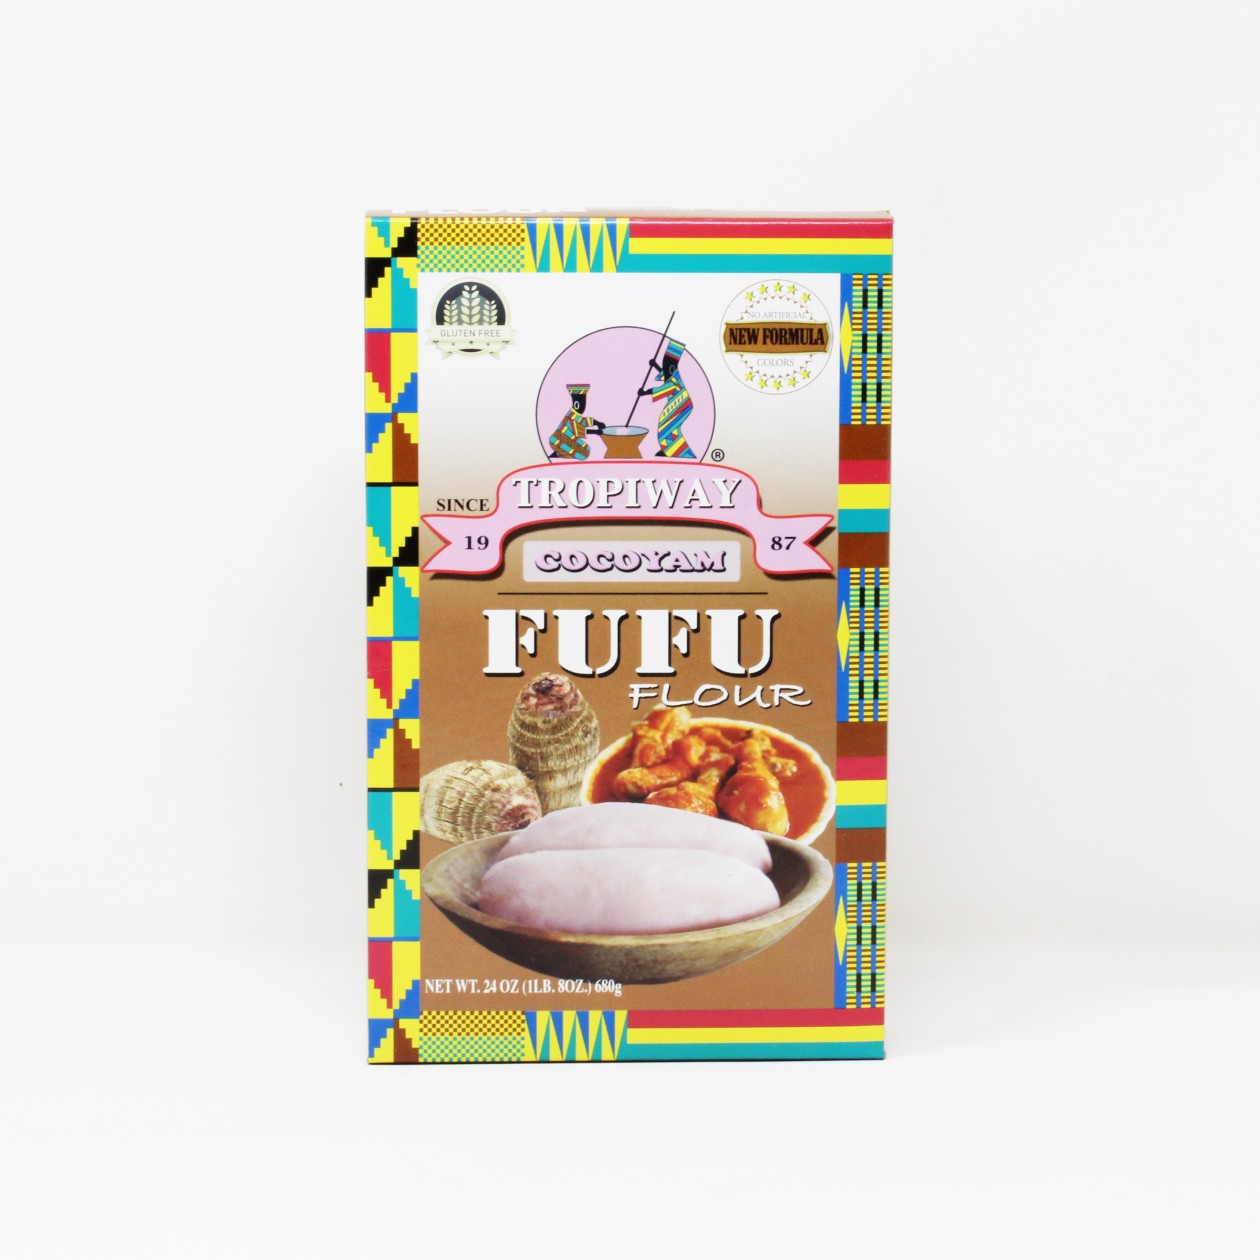 Tropiway Cocoyam Fufu Flour 680g